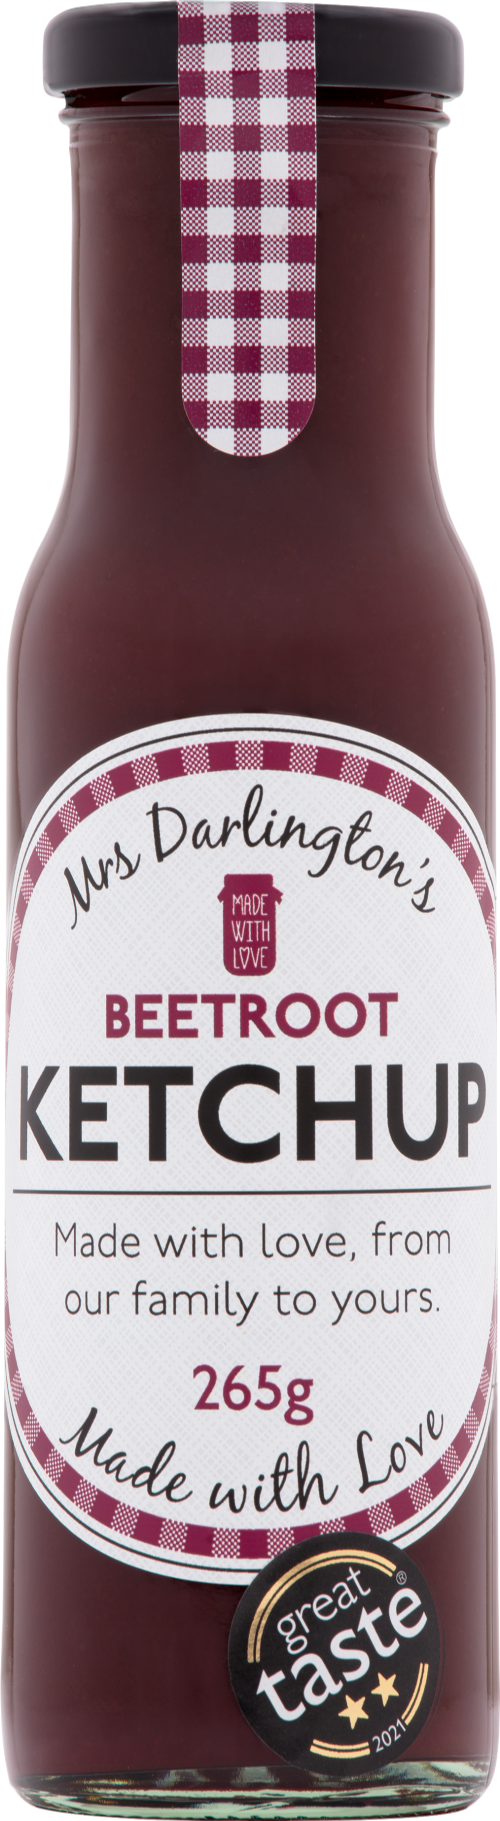 DARLINGTON'S Beetroot Ketchup 265g